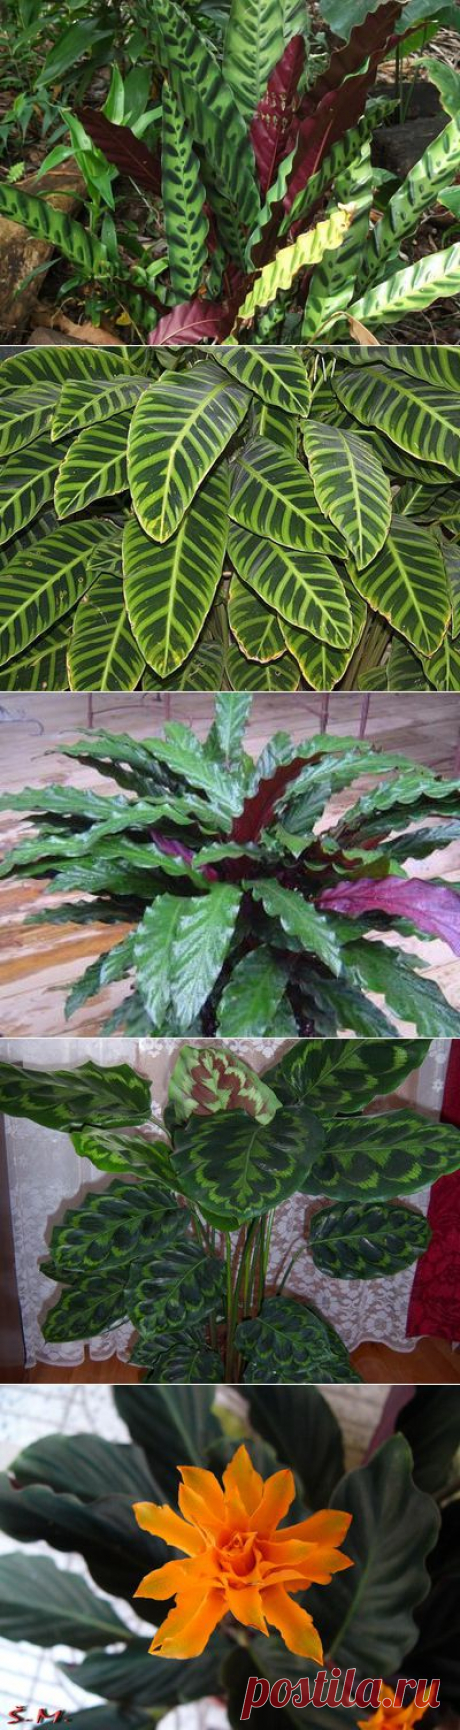 Растение калатея («молитвенный цветок»): фото, описание видов, уход и размножение в домашних условиях